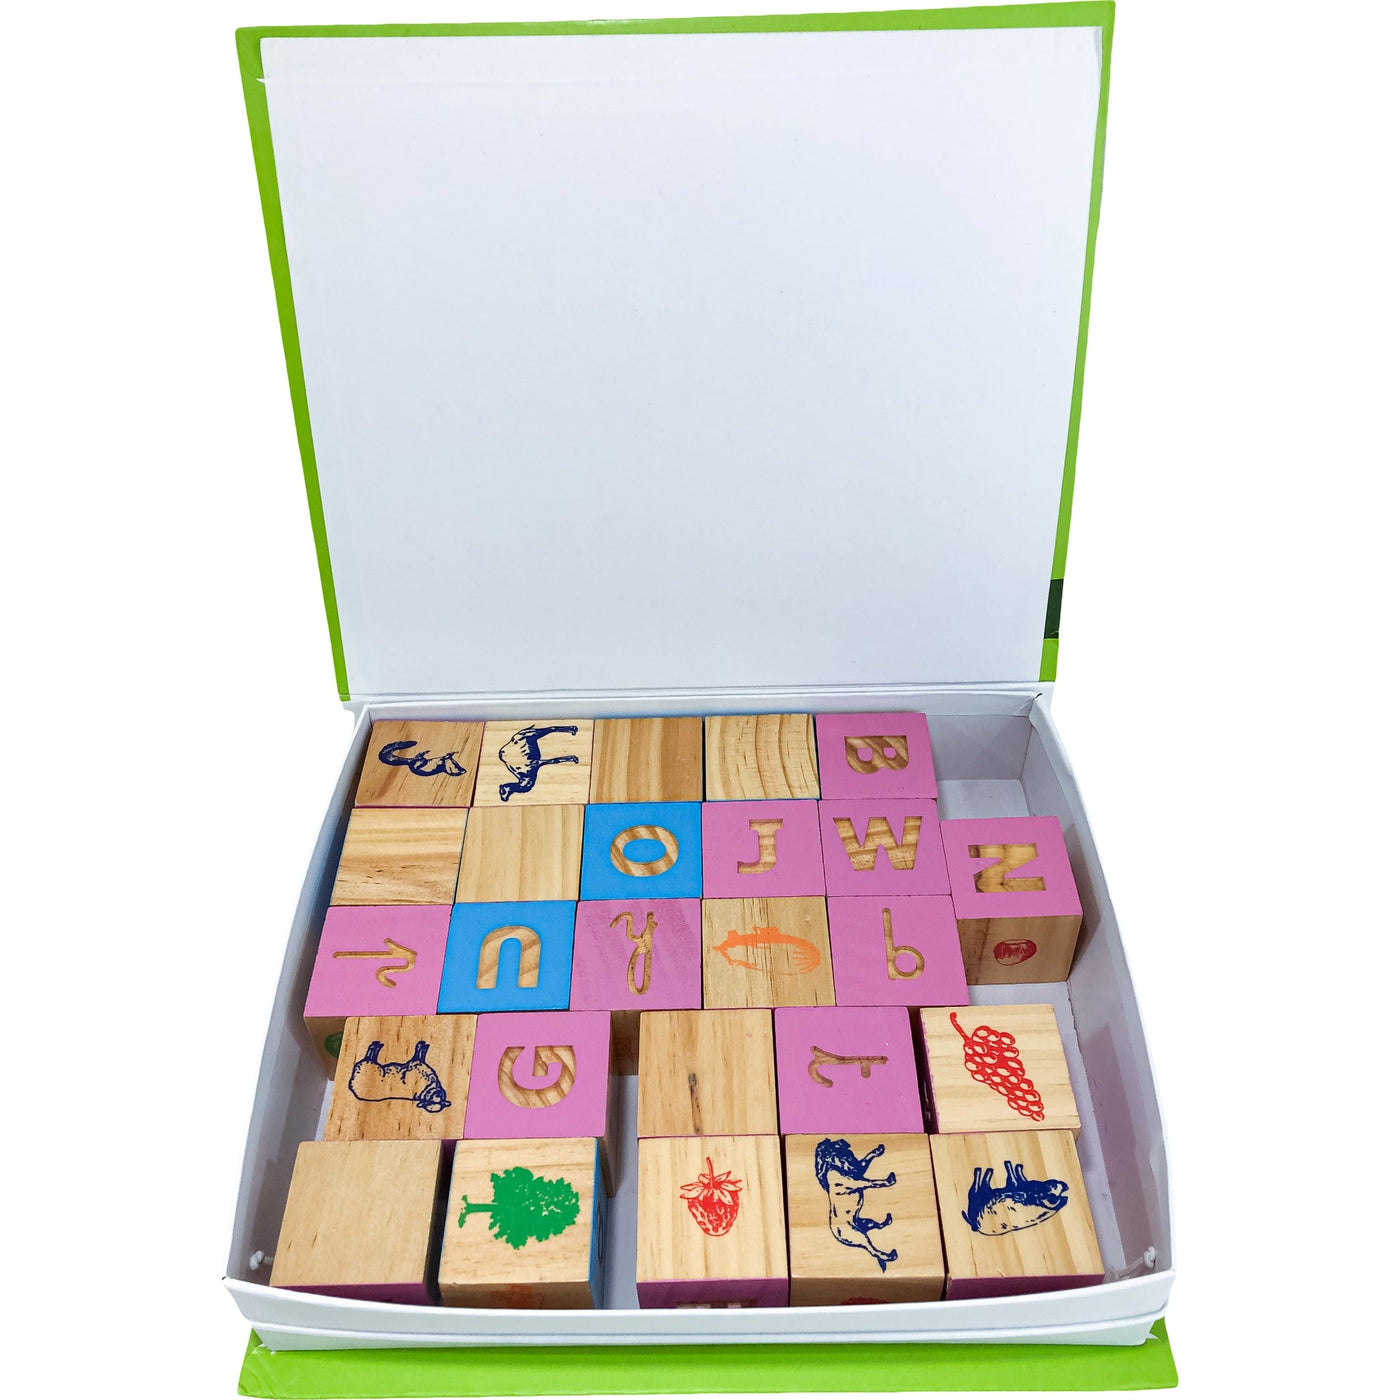 Jeu éducatif "26 Cubes Lettres Montessori" de seconde main en bois pour enfant à partir de 3 ans - Vue 3